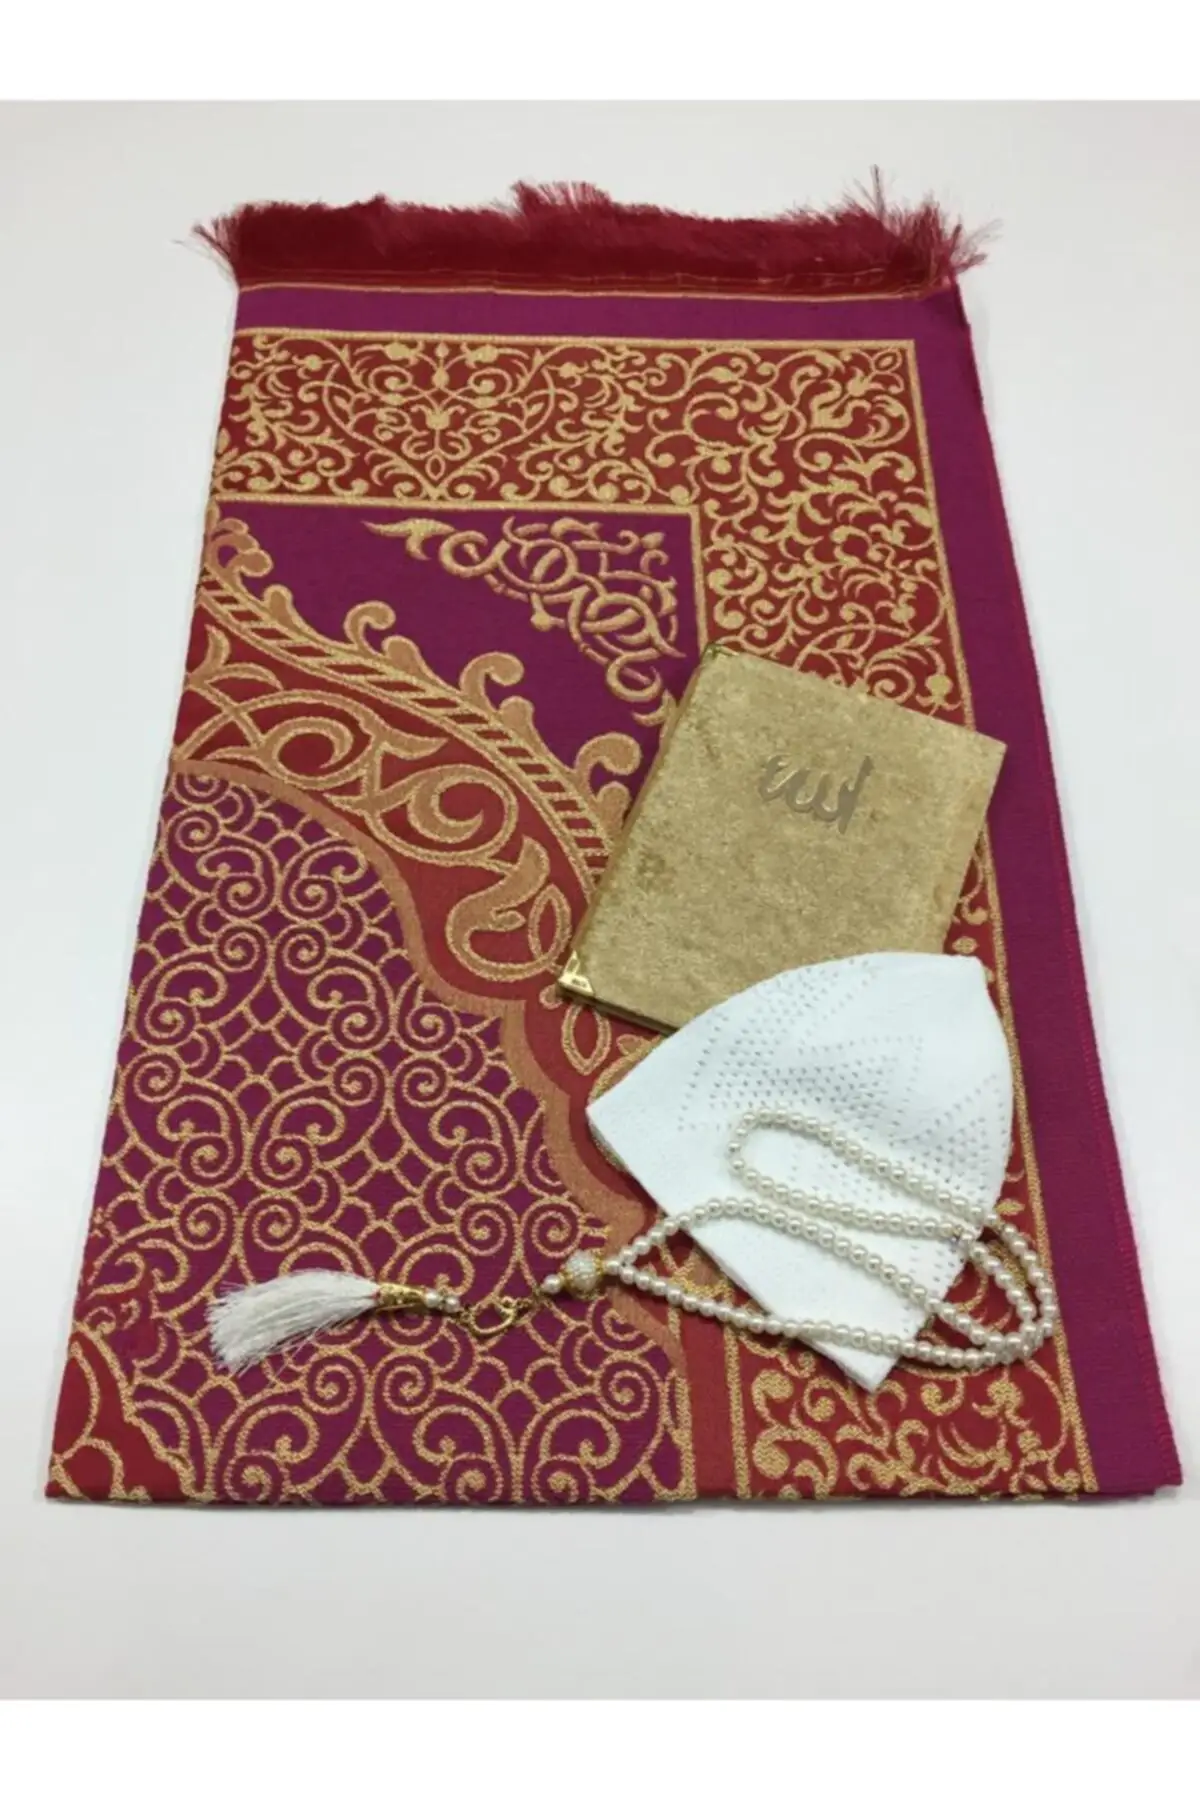 Исламский набор. Коран четки и молитвенный коврик. Книга с молитвами мусульманская заказать.